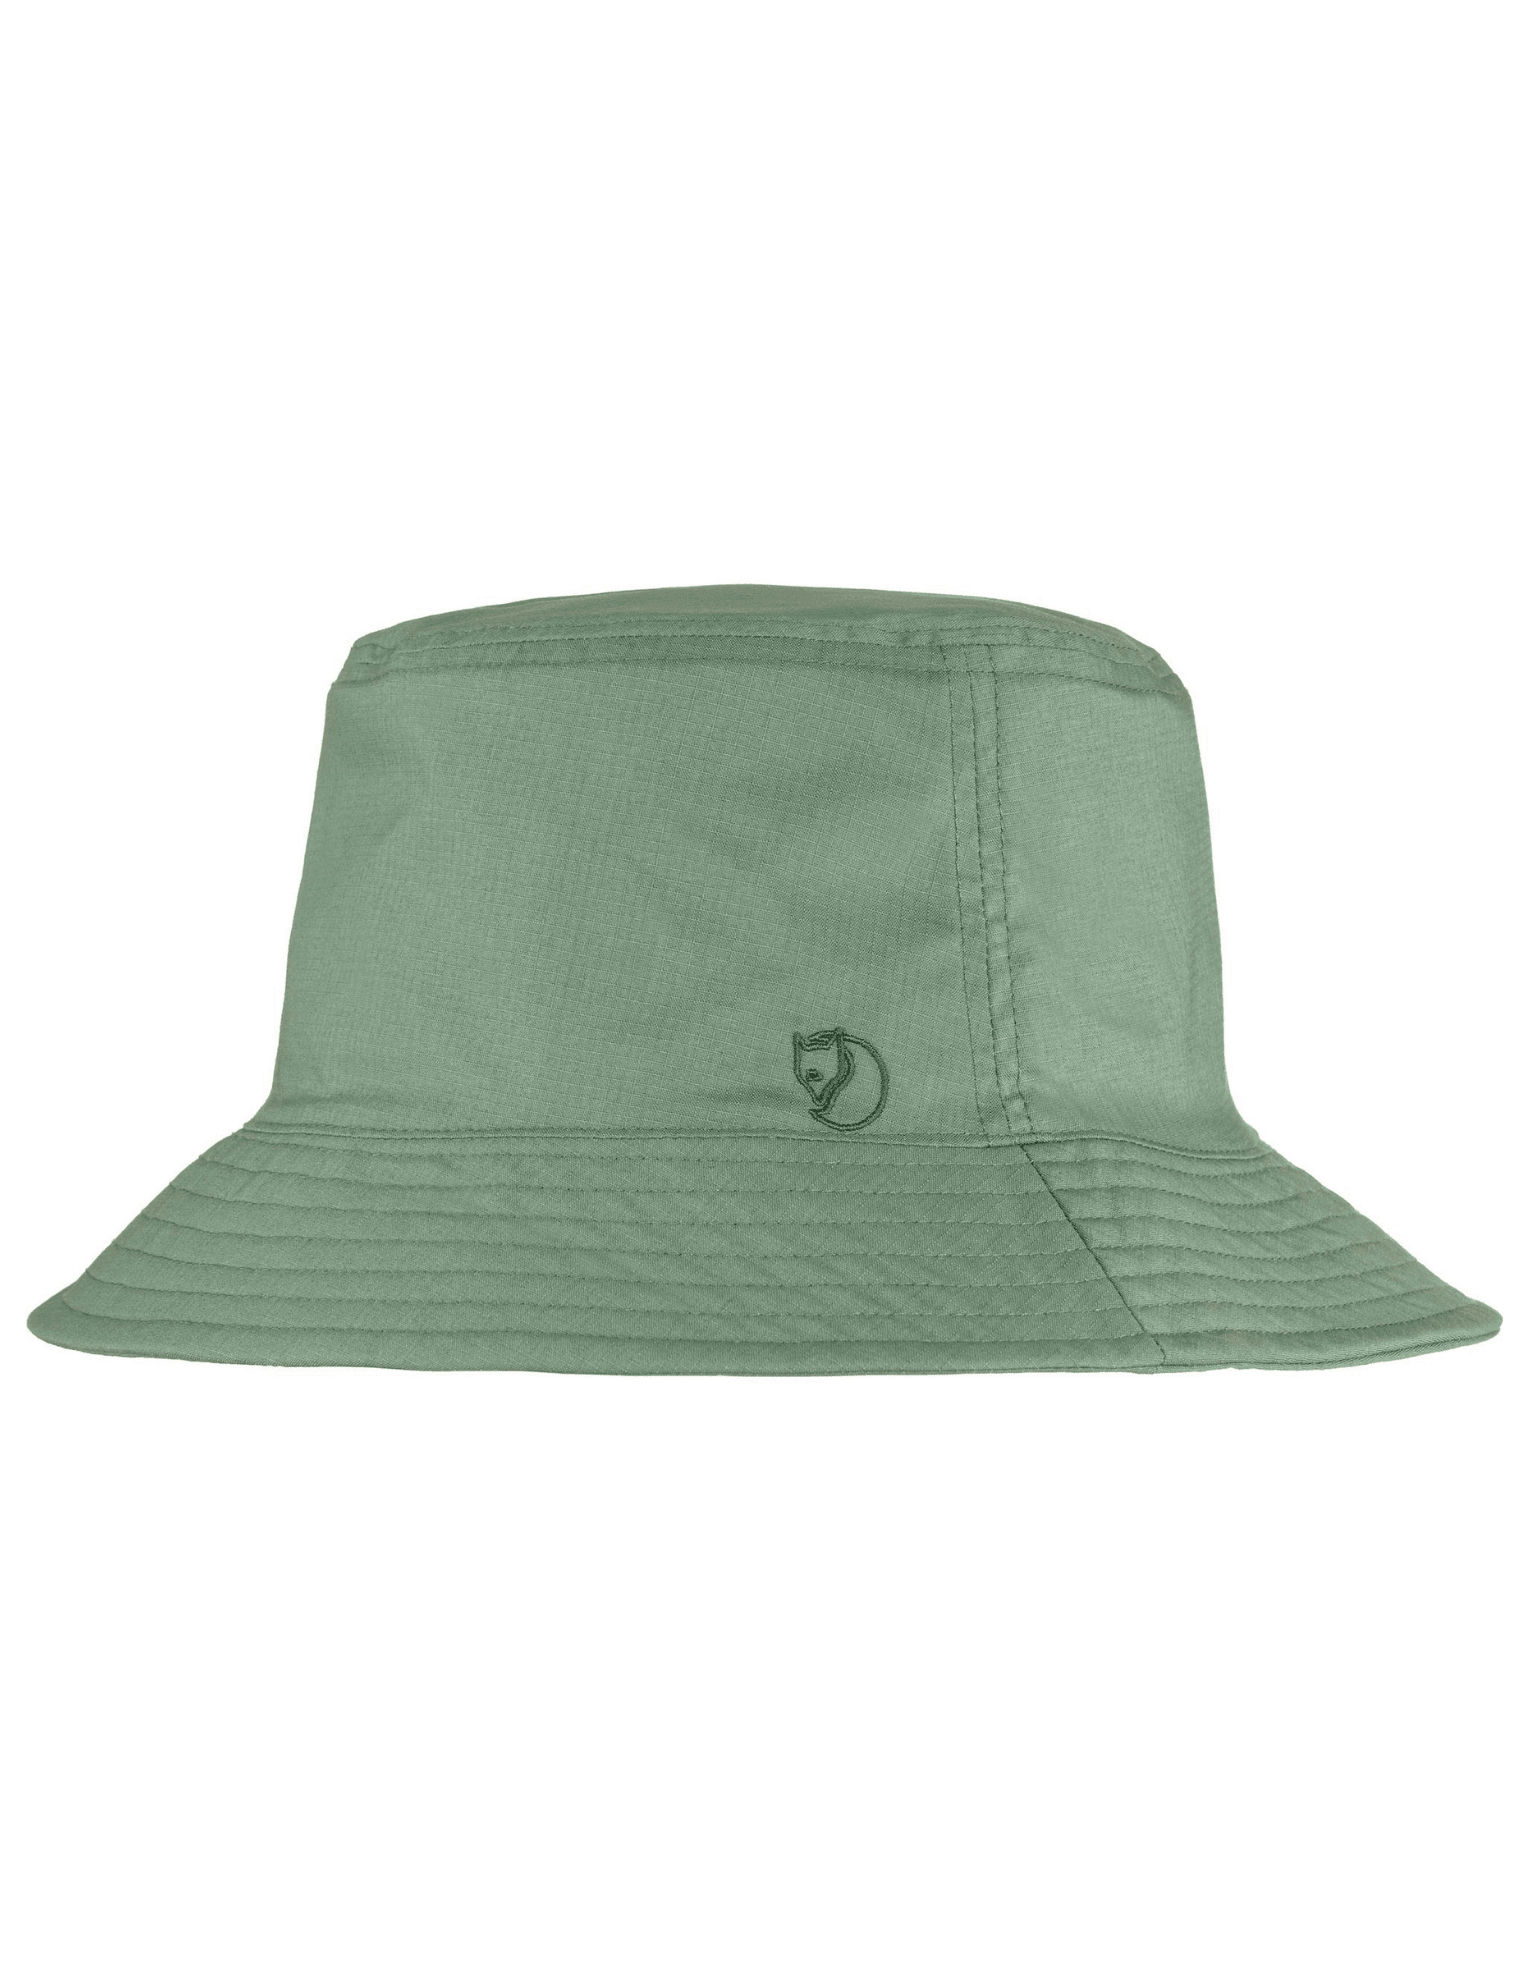 Reversible Bucket Hat Patina Green Dark Navy - ECRU